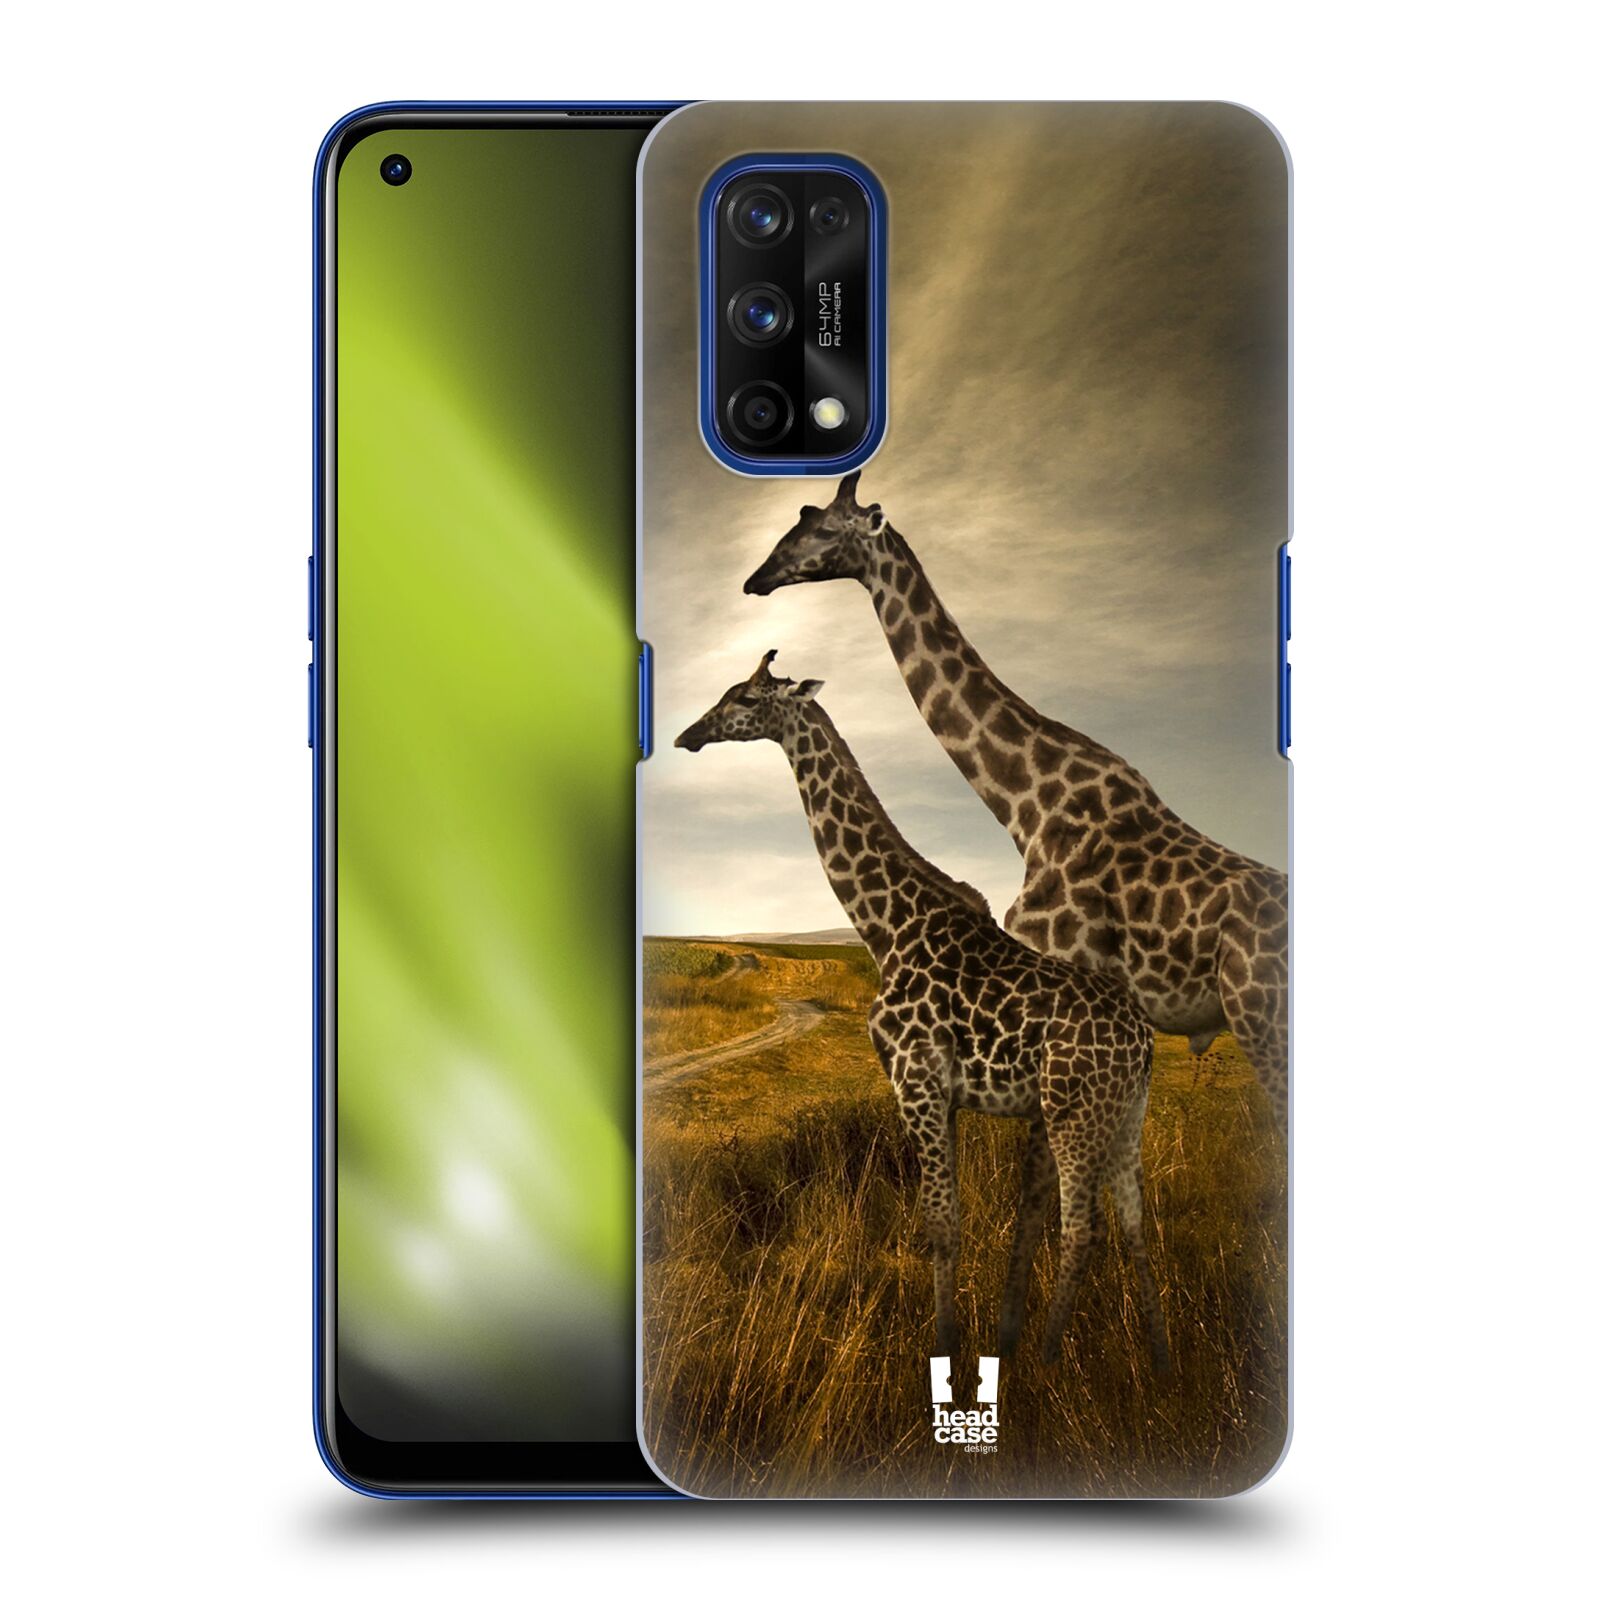 Zadní obal pro mobil Realme 7 PRO - HEAD CASE - Svět zvířat žirafy